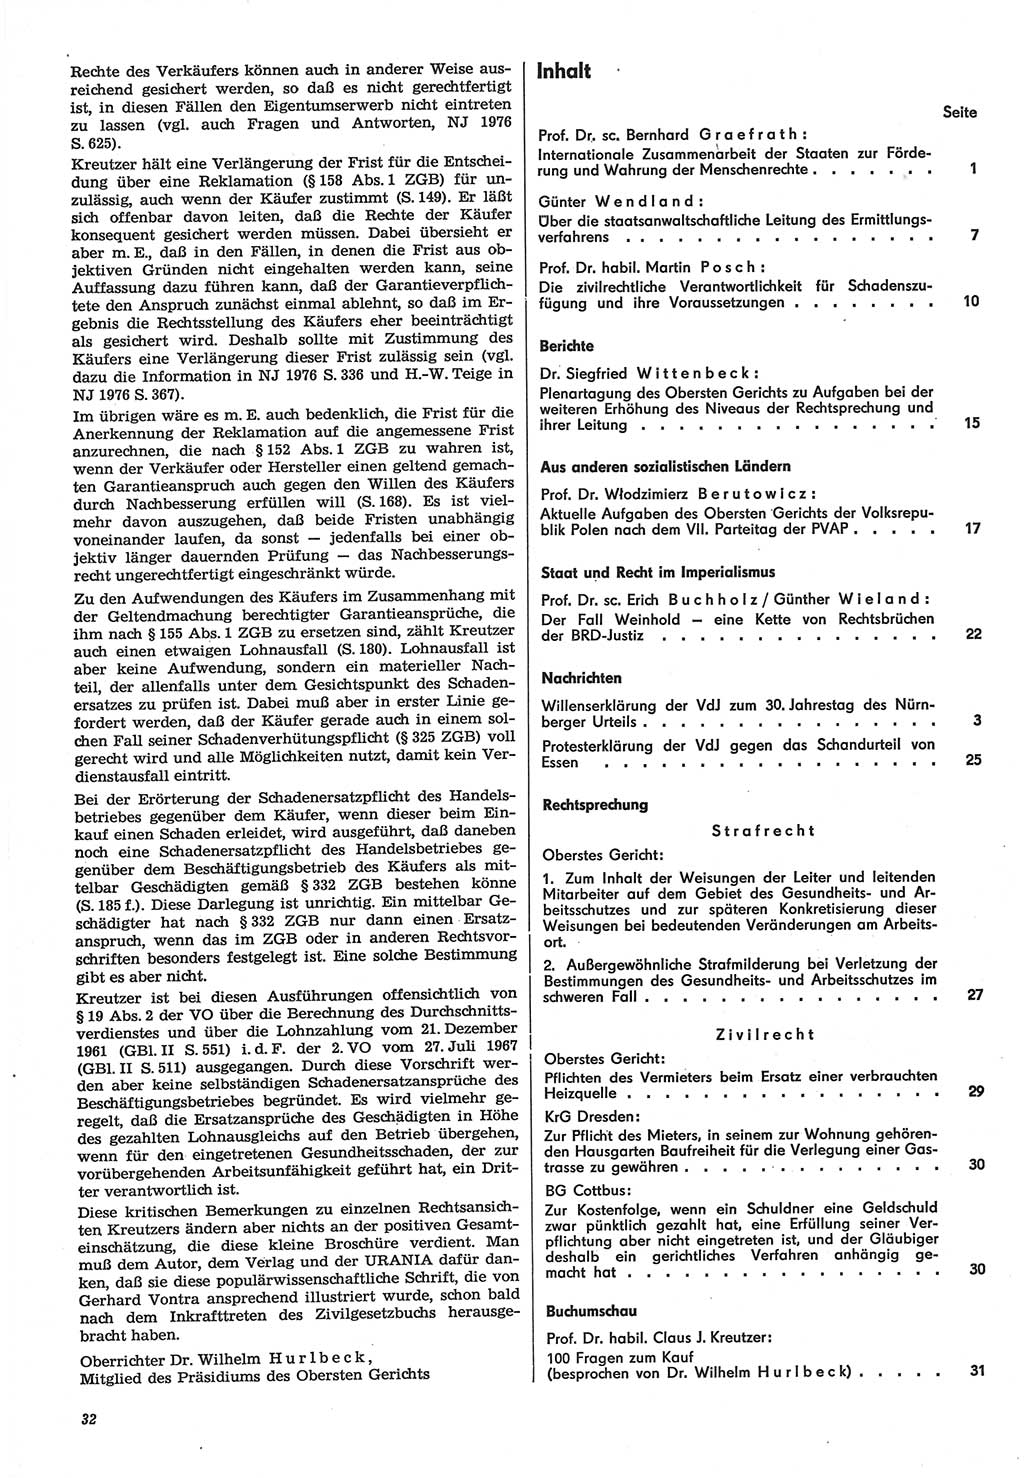 Neue Justiz (NJ), Zeitschrift für Recht und Rechtswissenschaft-Zeitschrift, sozialistisches Recht und Gesetzlichkeit, 31. Jahrgang 1977, Seite 32 (NJ DDR 1977, S. 32)